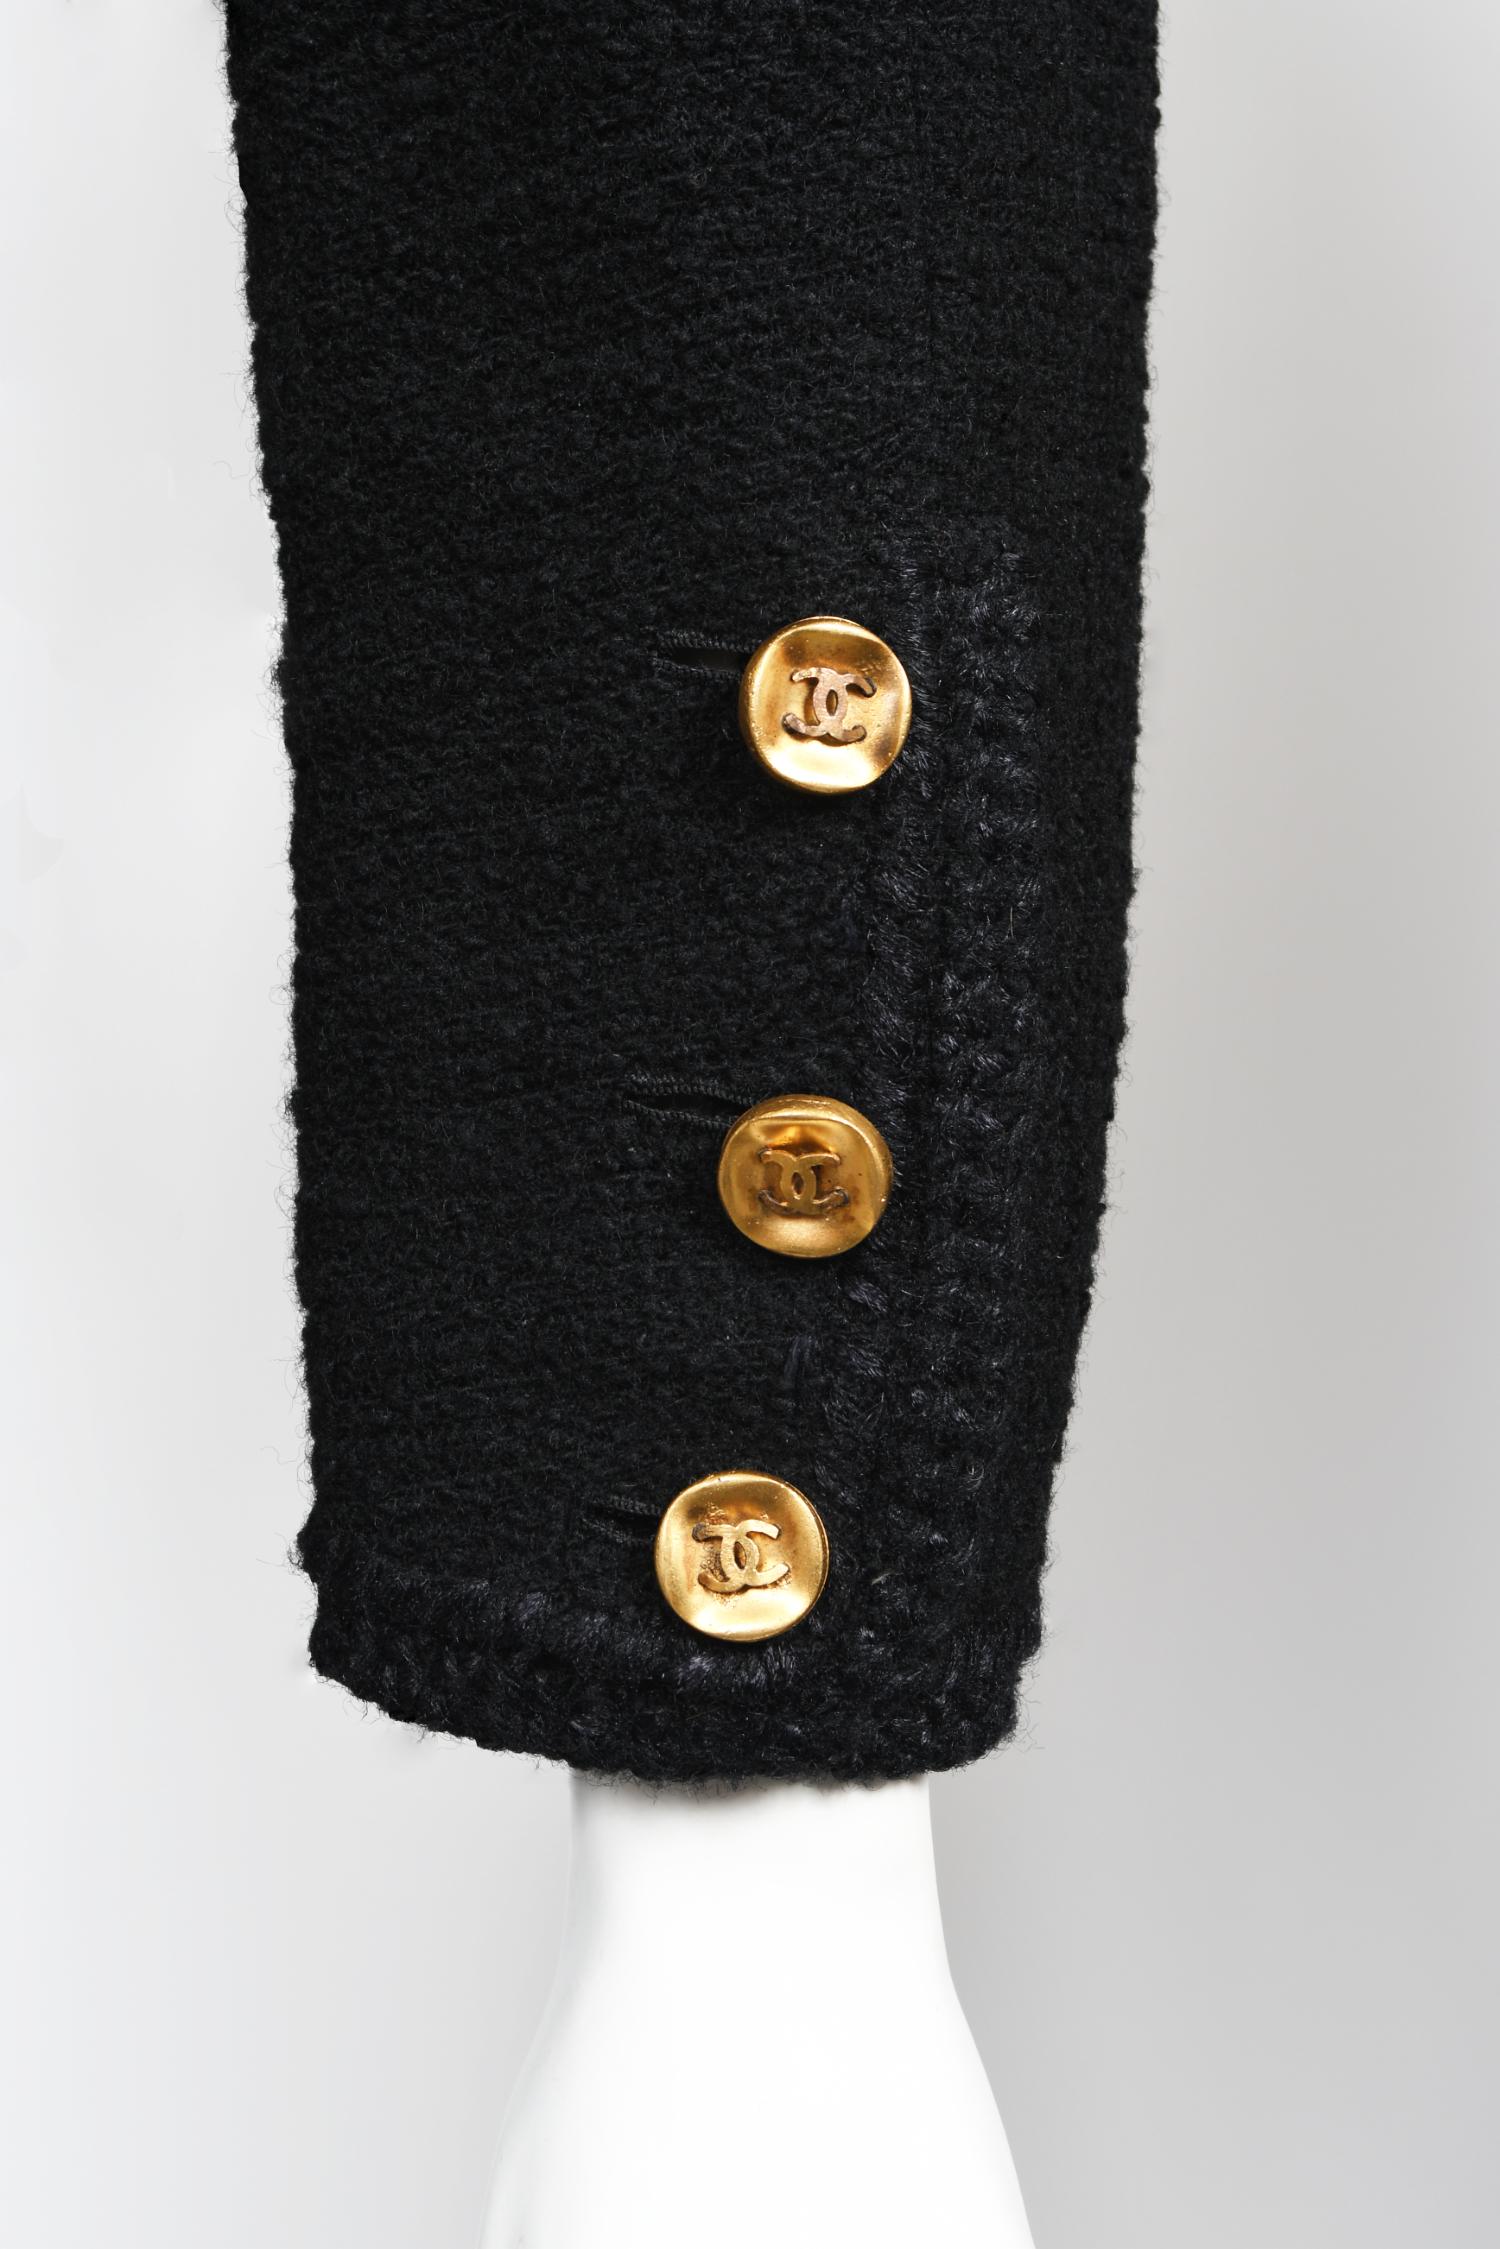 Vintage 1973 Chanel Haute Couture Black Boucle Wool Logo Buttons Jacket Suit  6